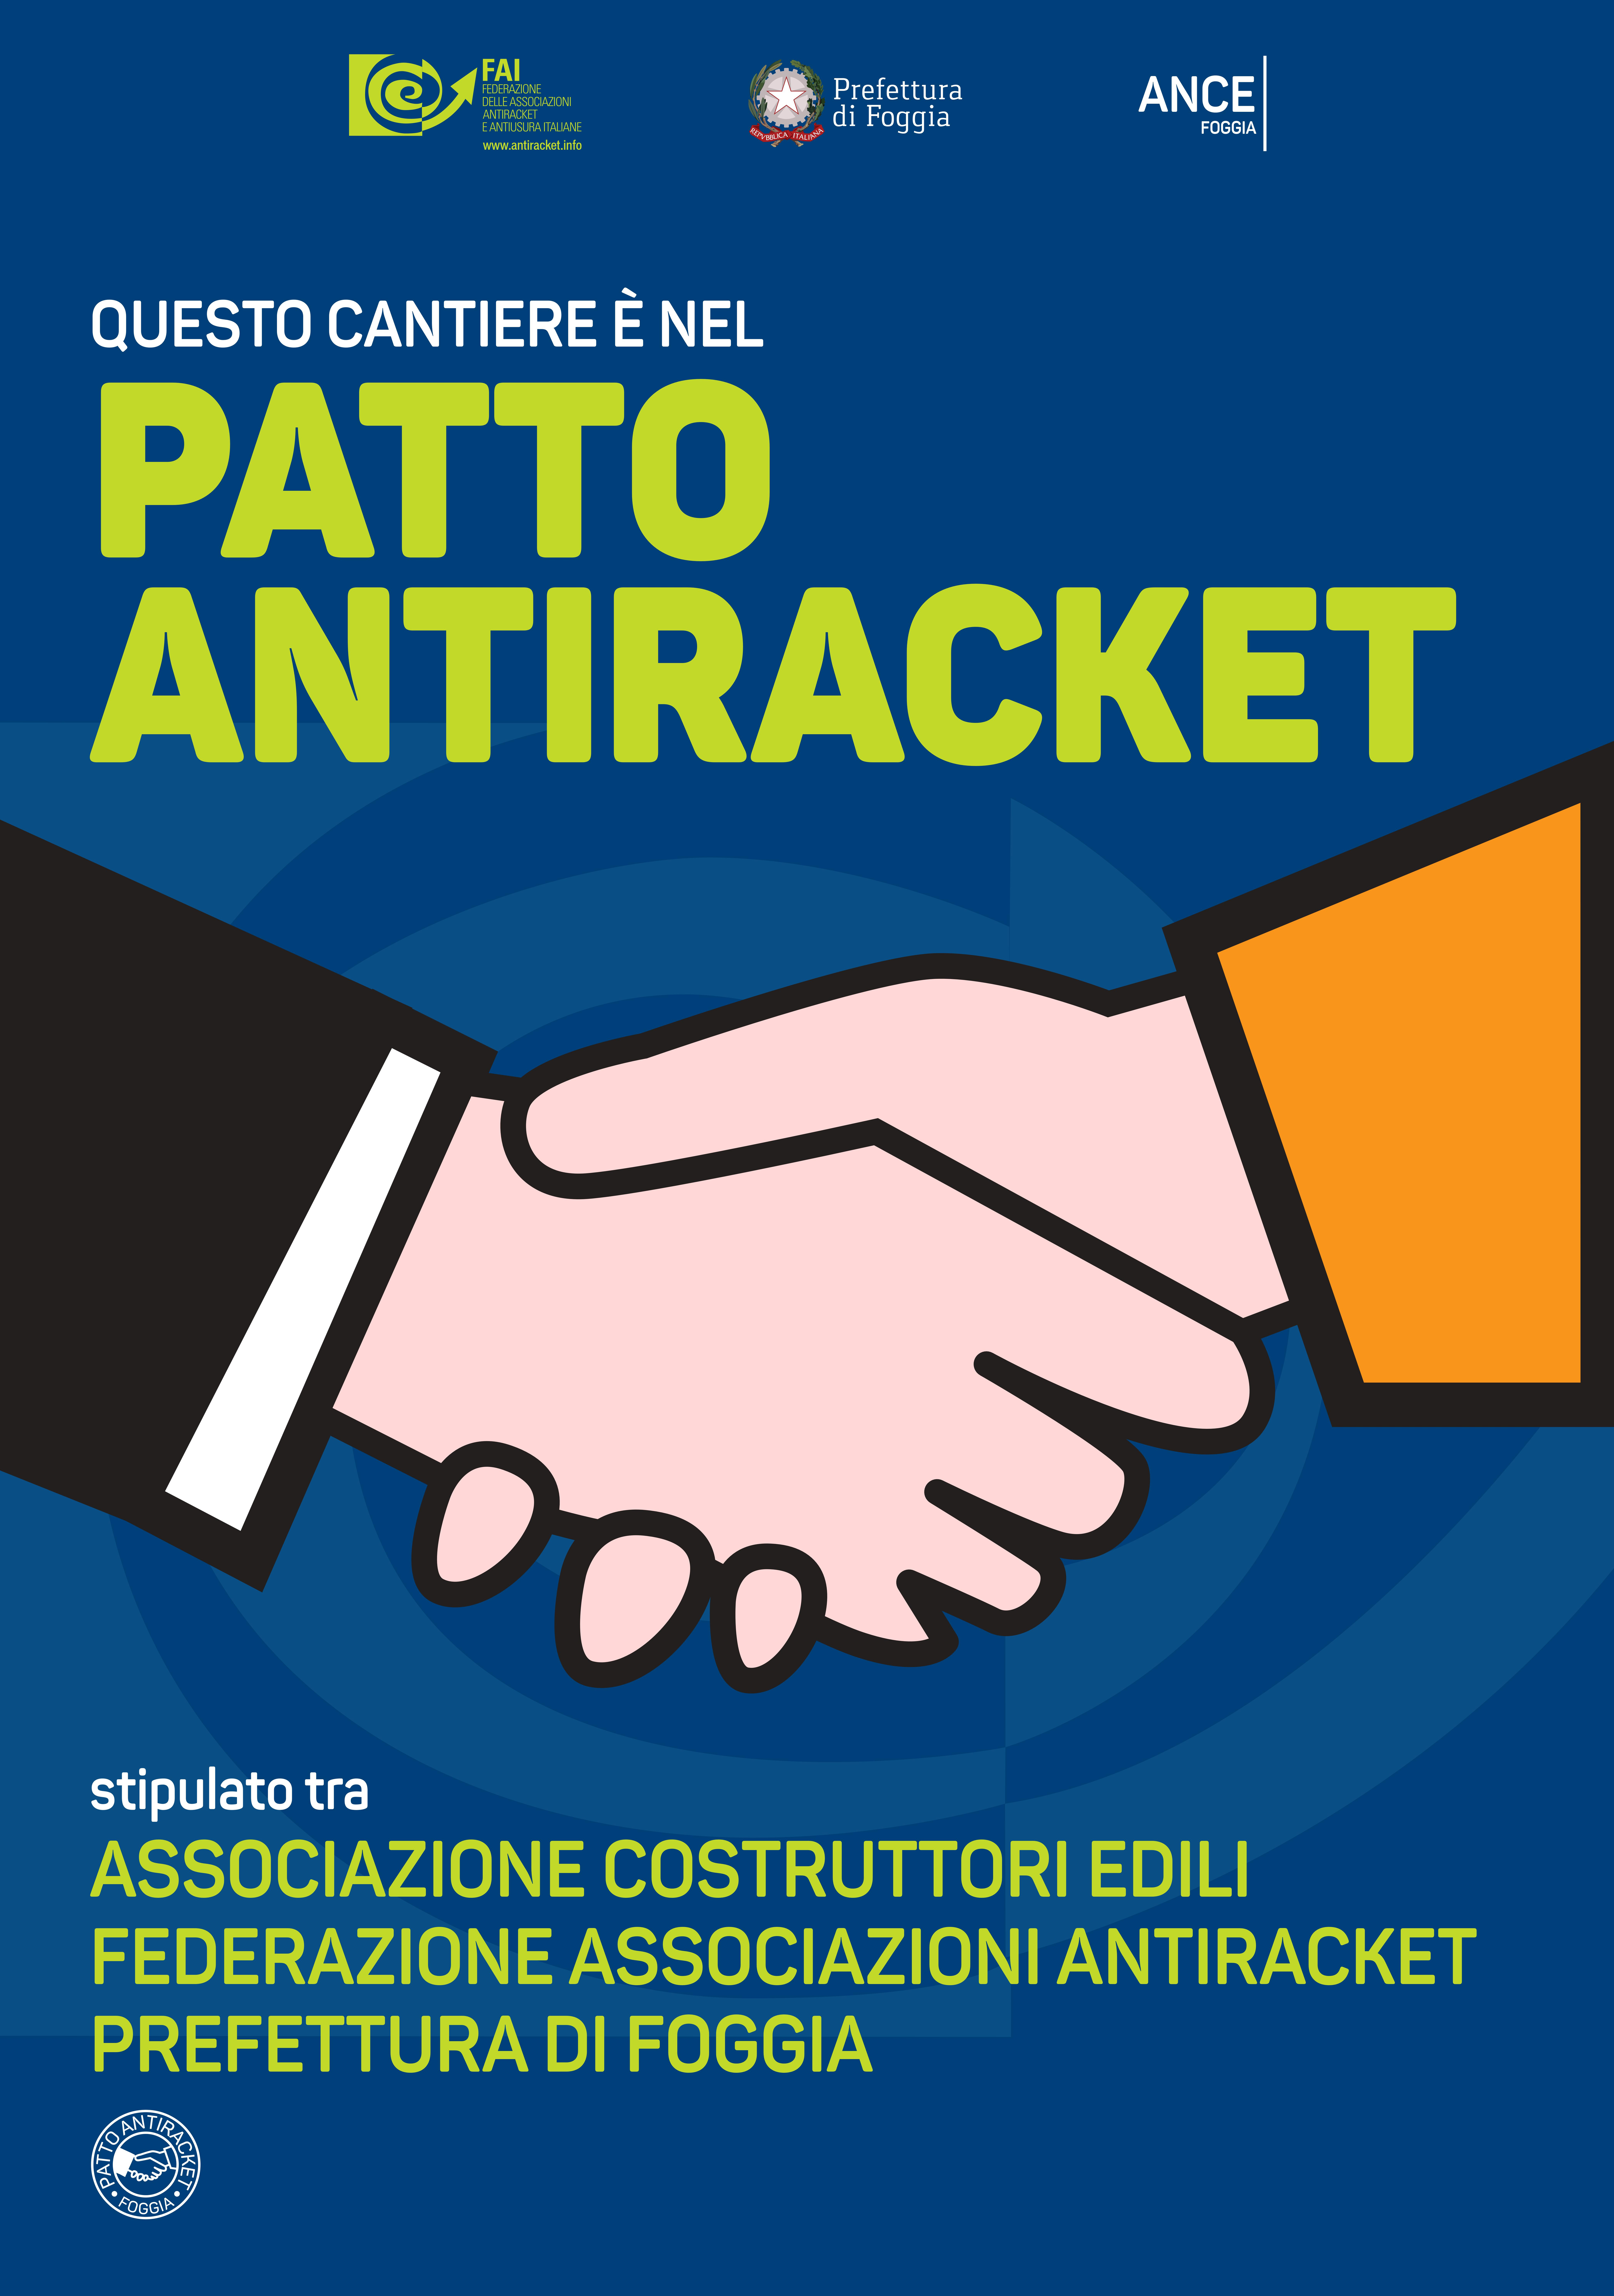  Foggia diventa laboratorio nazionale dell’Antiracket: da domani il logo affisso nei cantieri che aderiranno al Patto